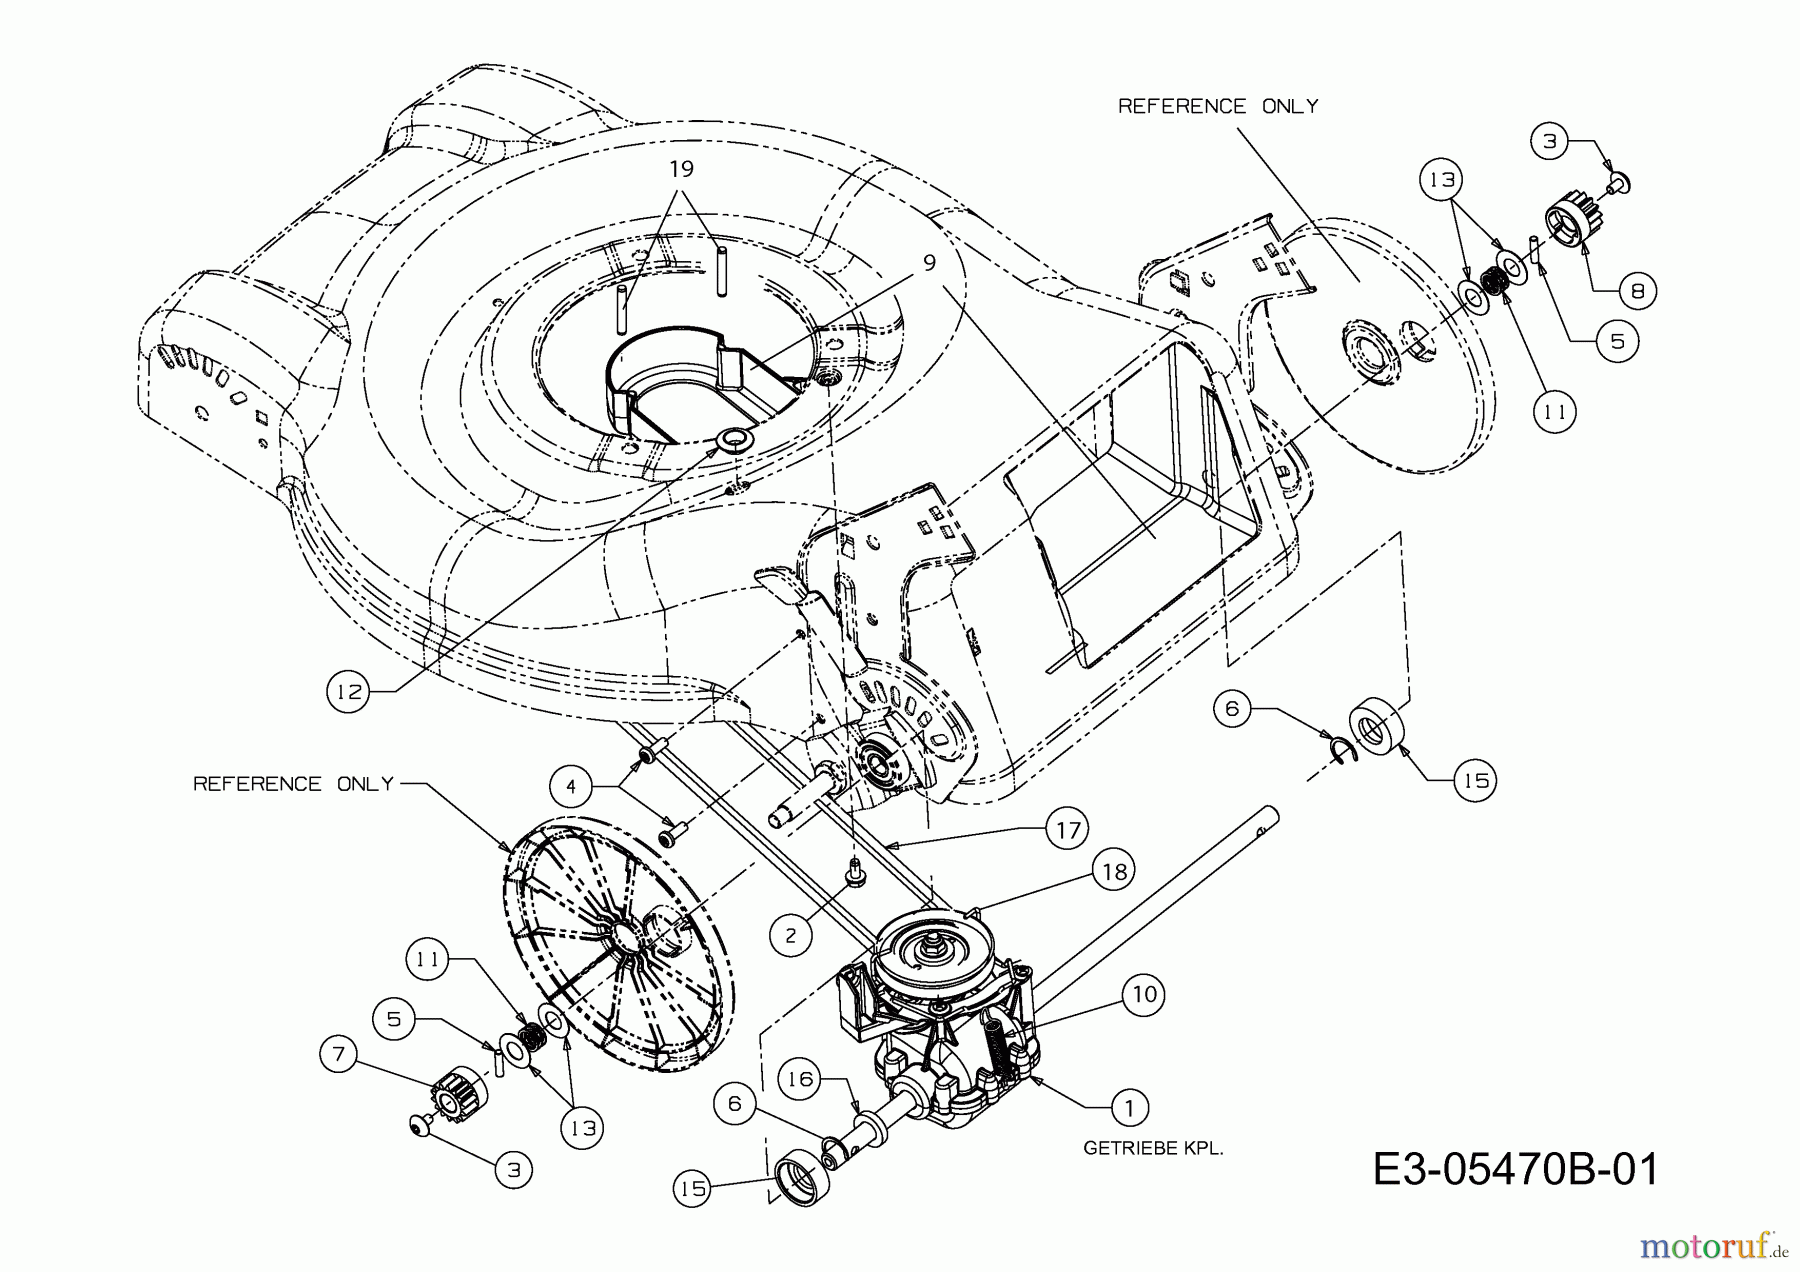  MTD Motormäher mit Antrieb 46 SPHM-HQ 12D-J2AQ616  (2012) Getriebe